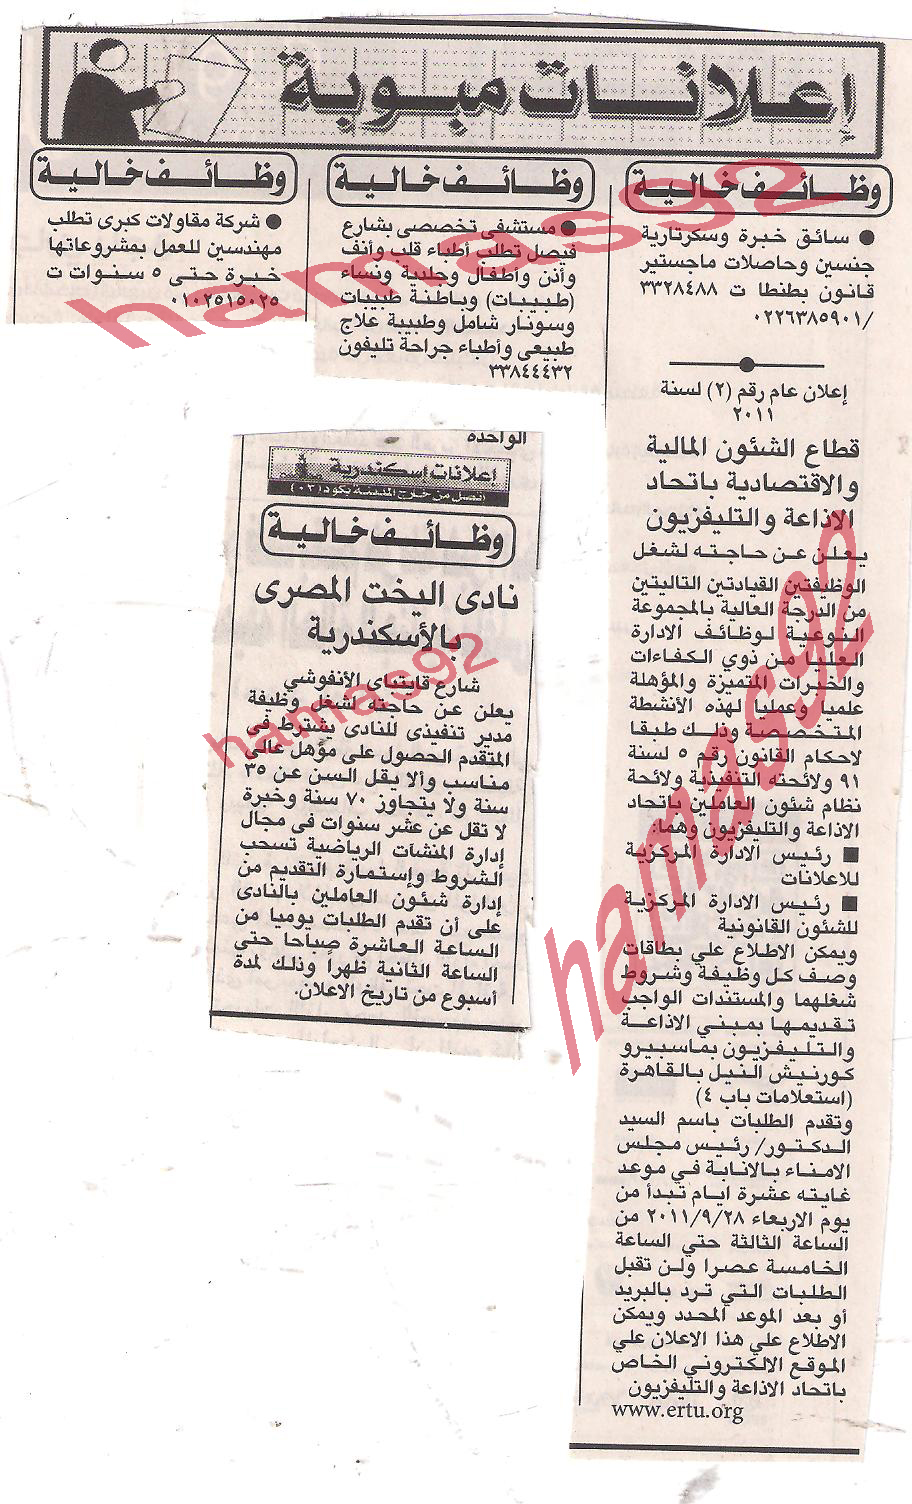 إعلانات وظائف جريدة الاهرام ليوم الاربعاء 28 سبتمبر 2011  Picture+001